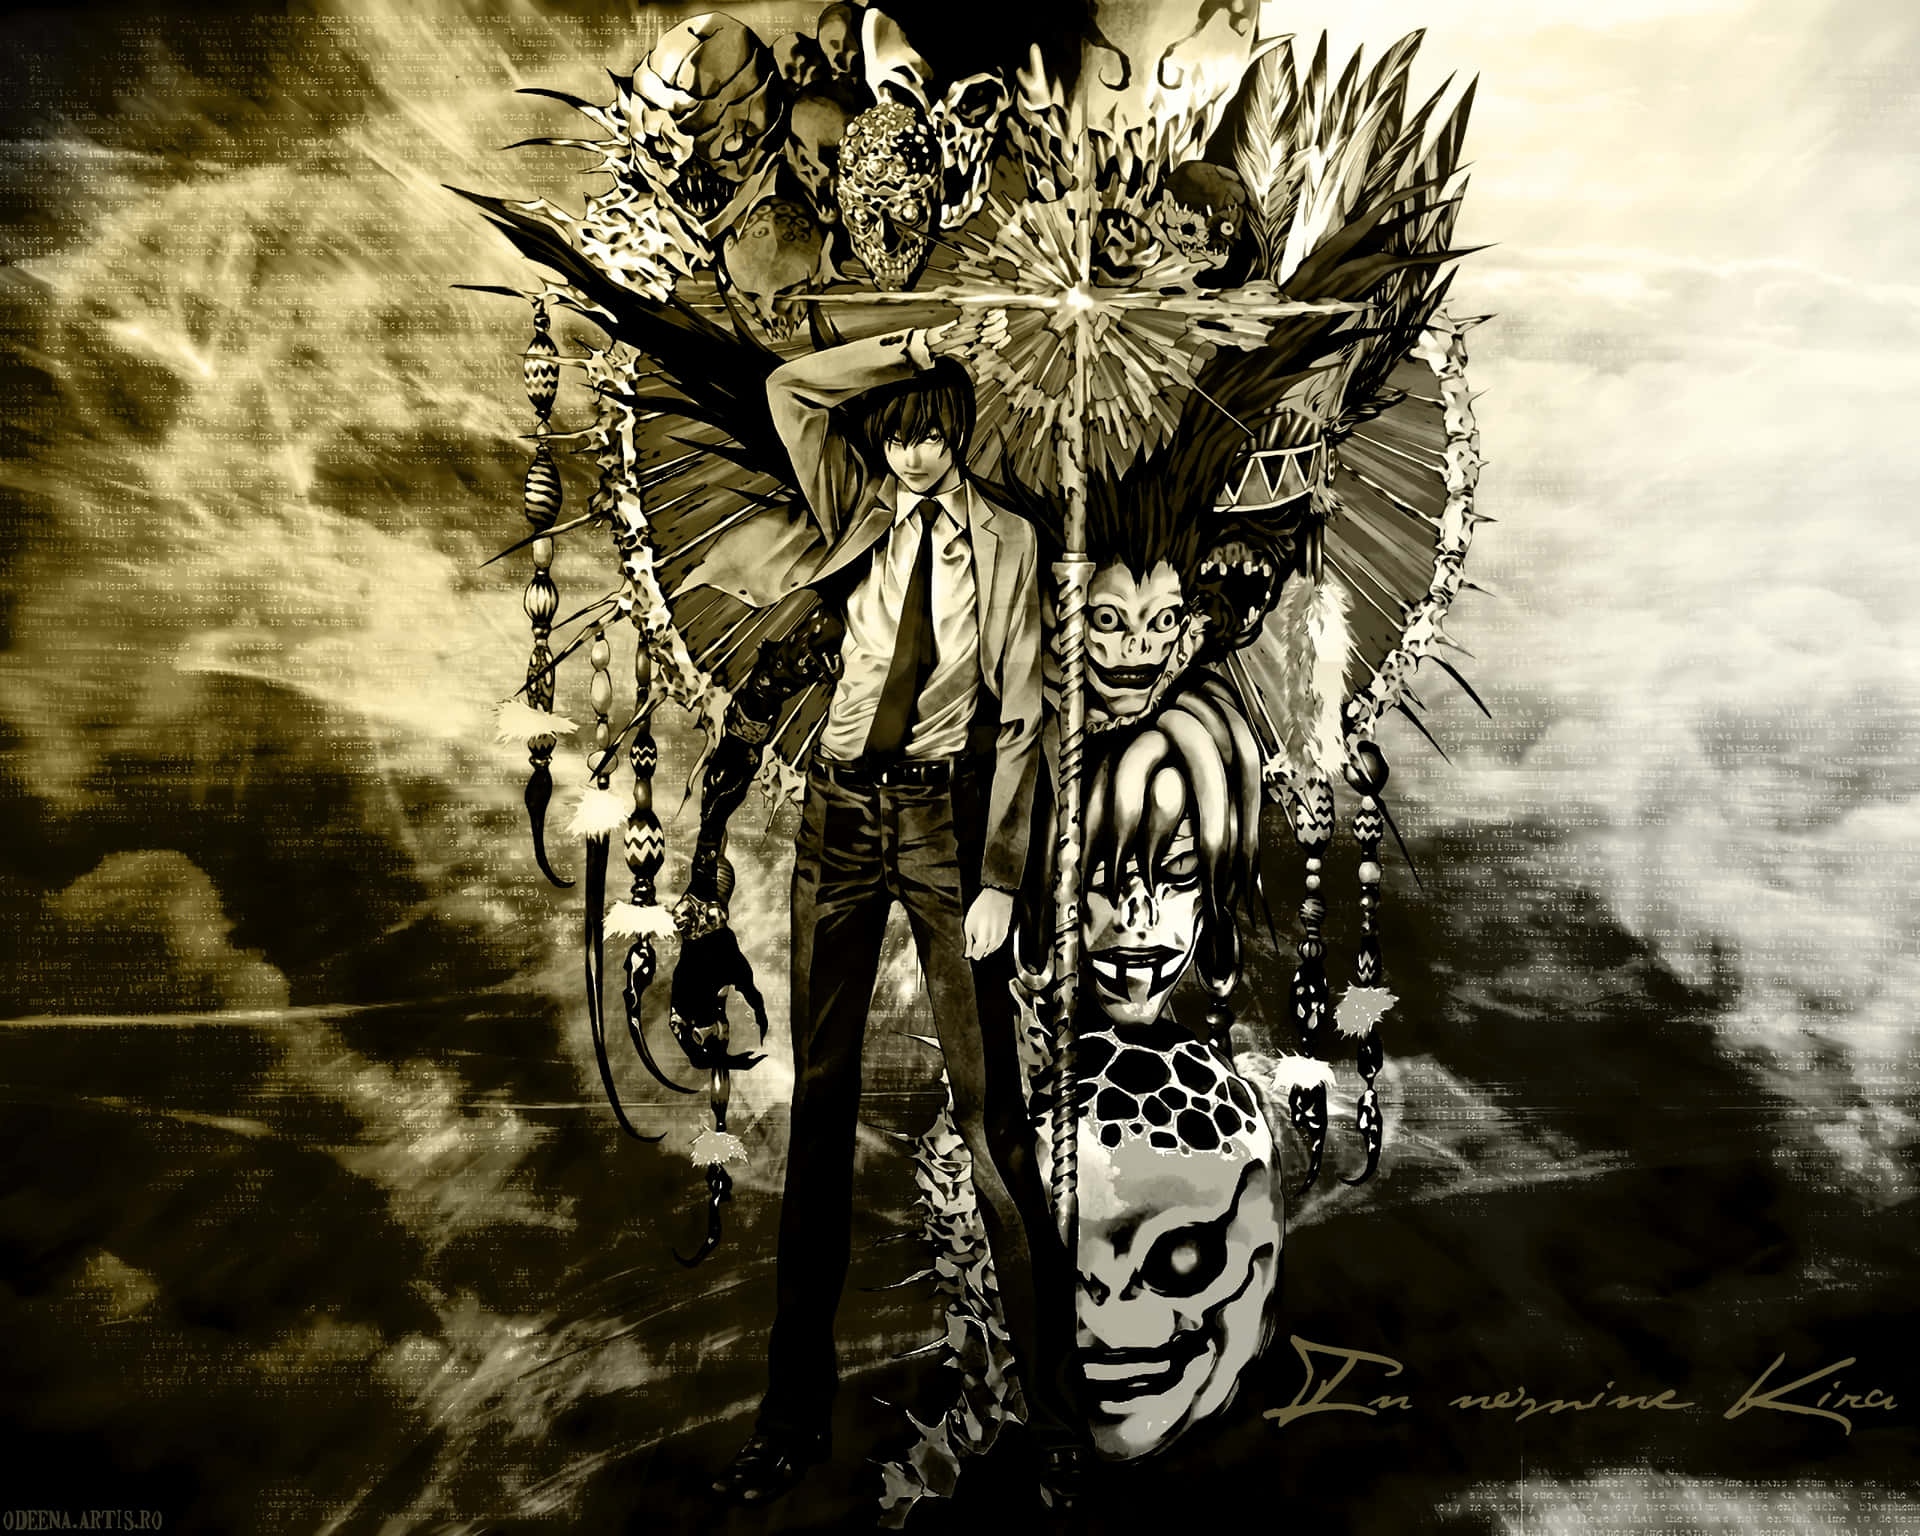 Shinigami, en Grimm Reapern af Døden. Wallpaper